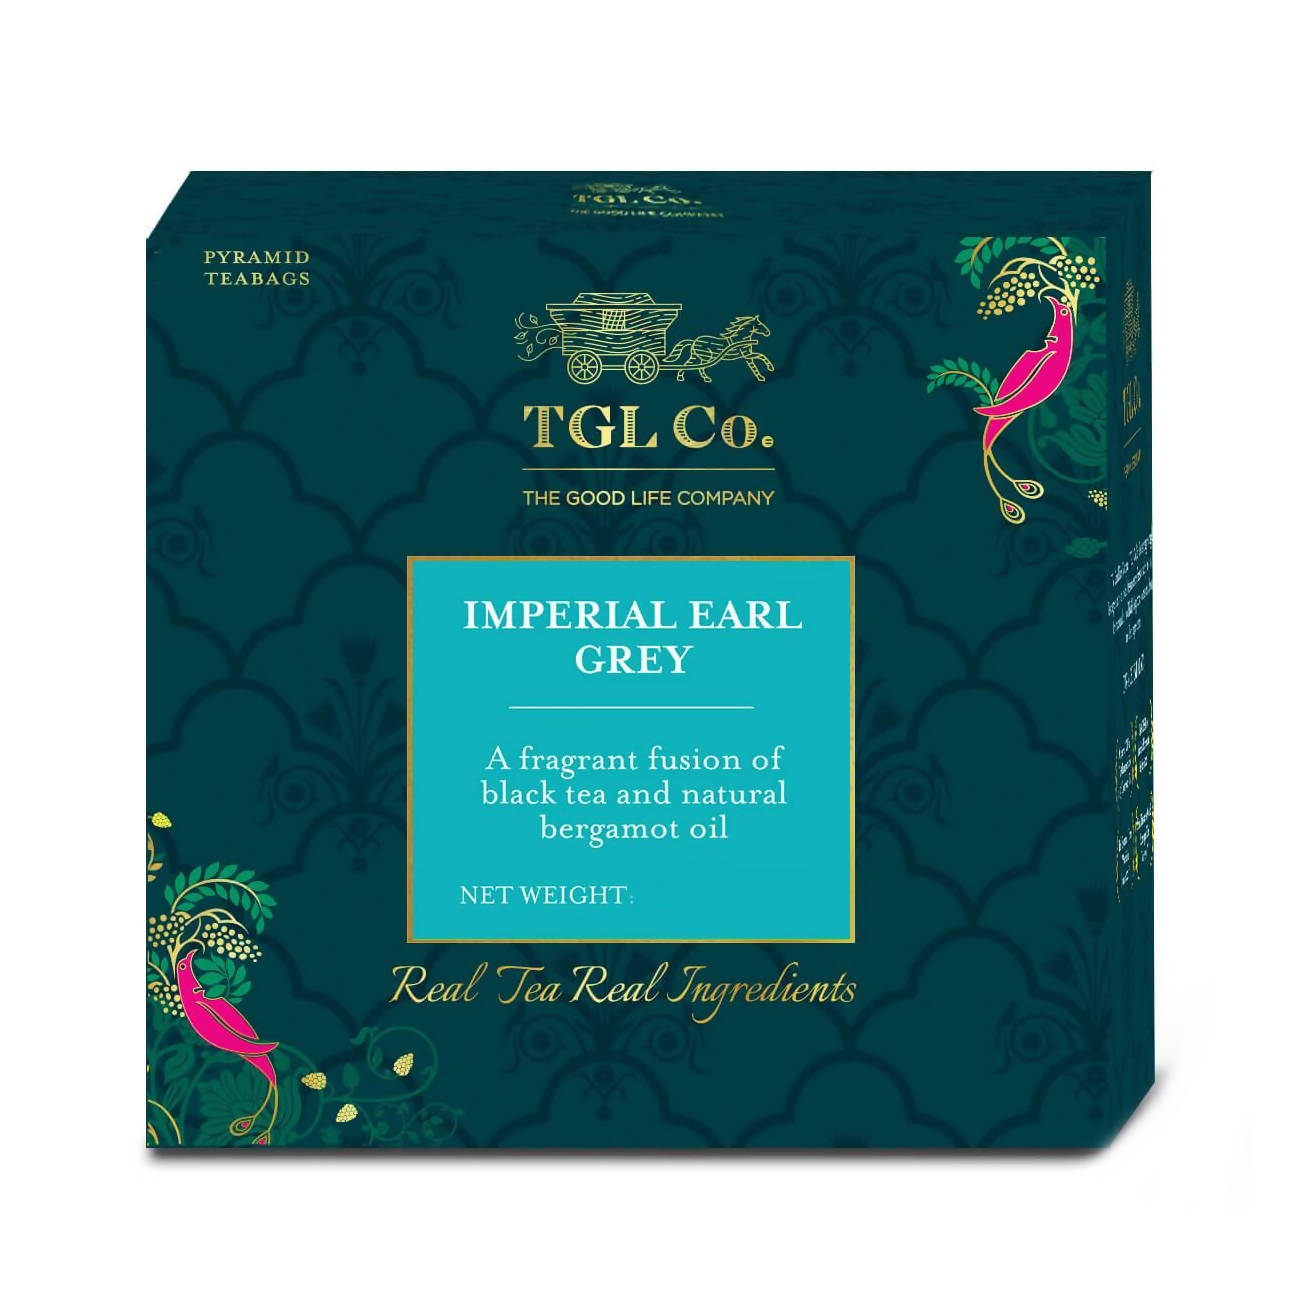 Buy TGL Co. Imperial Earl Grey Black Tea Bag Online at Best Price